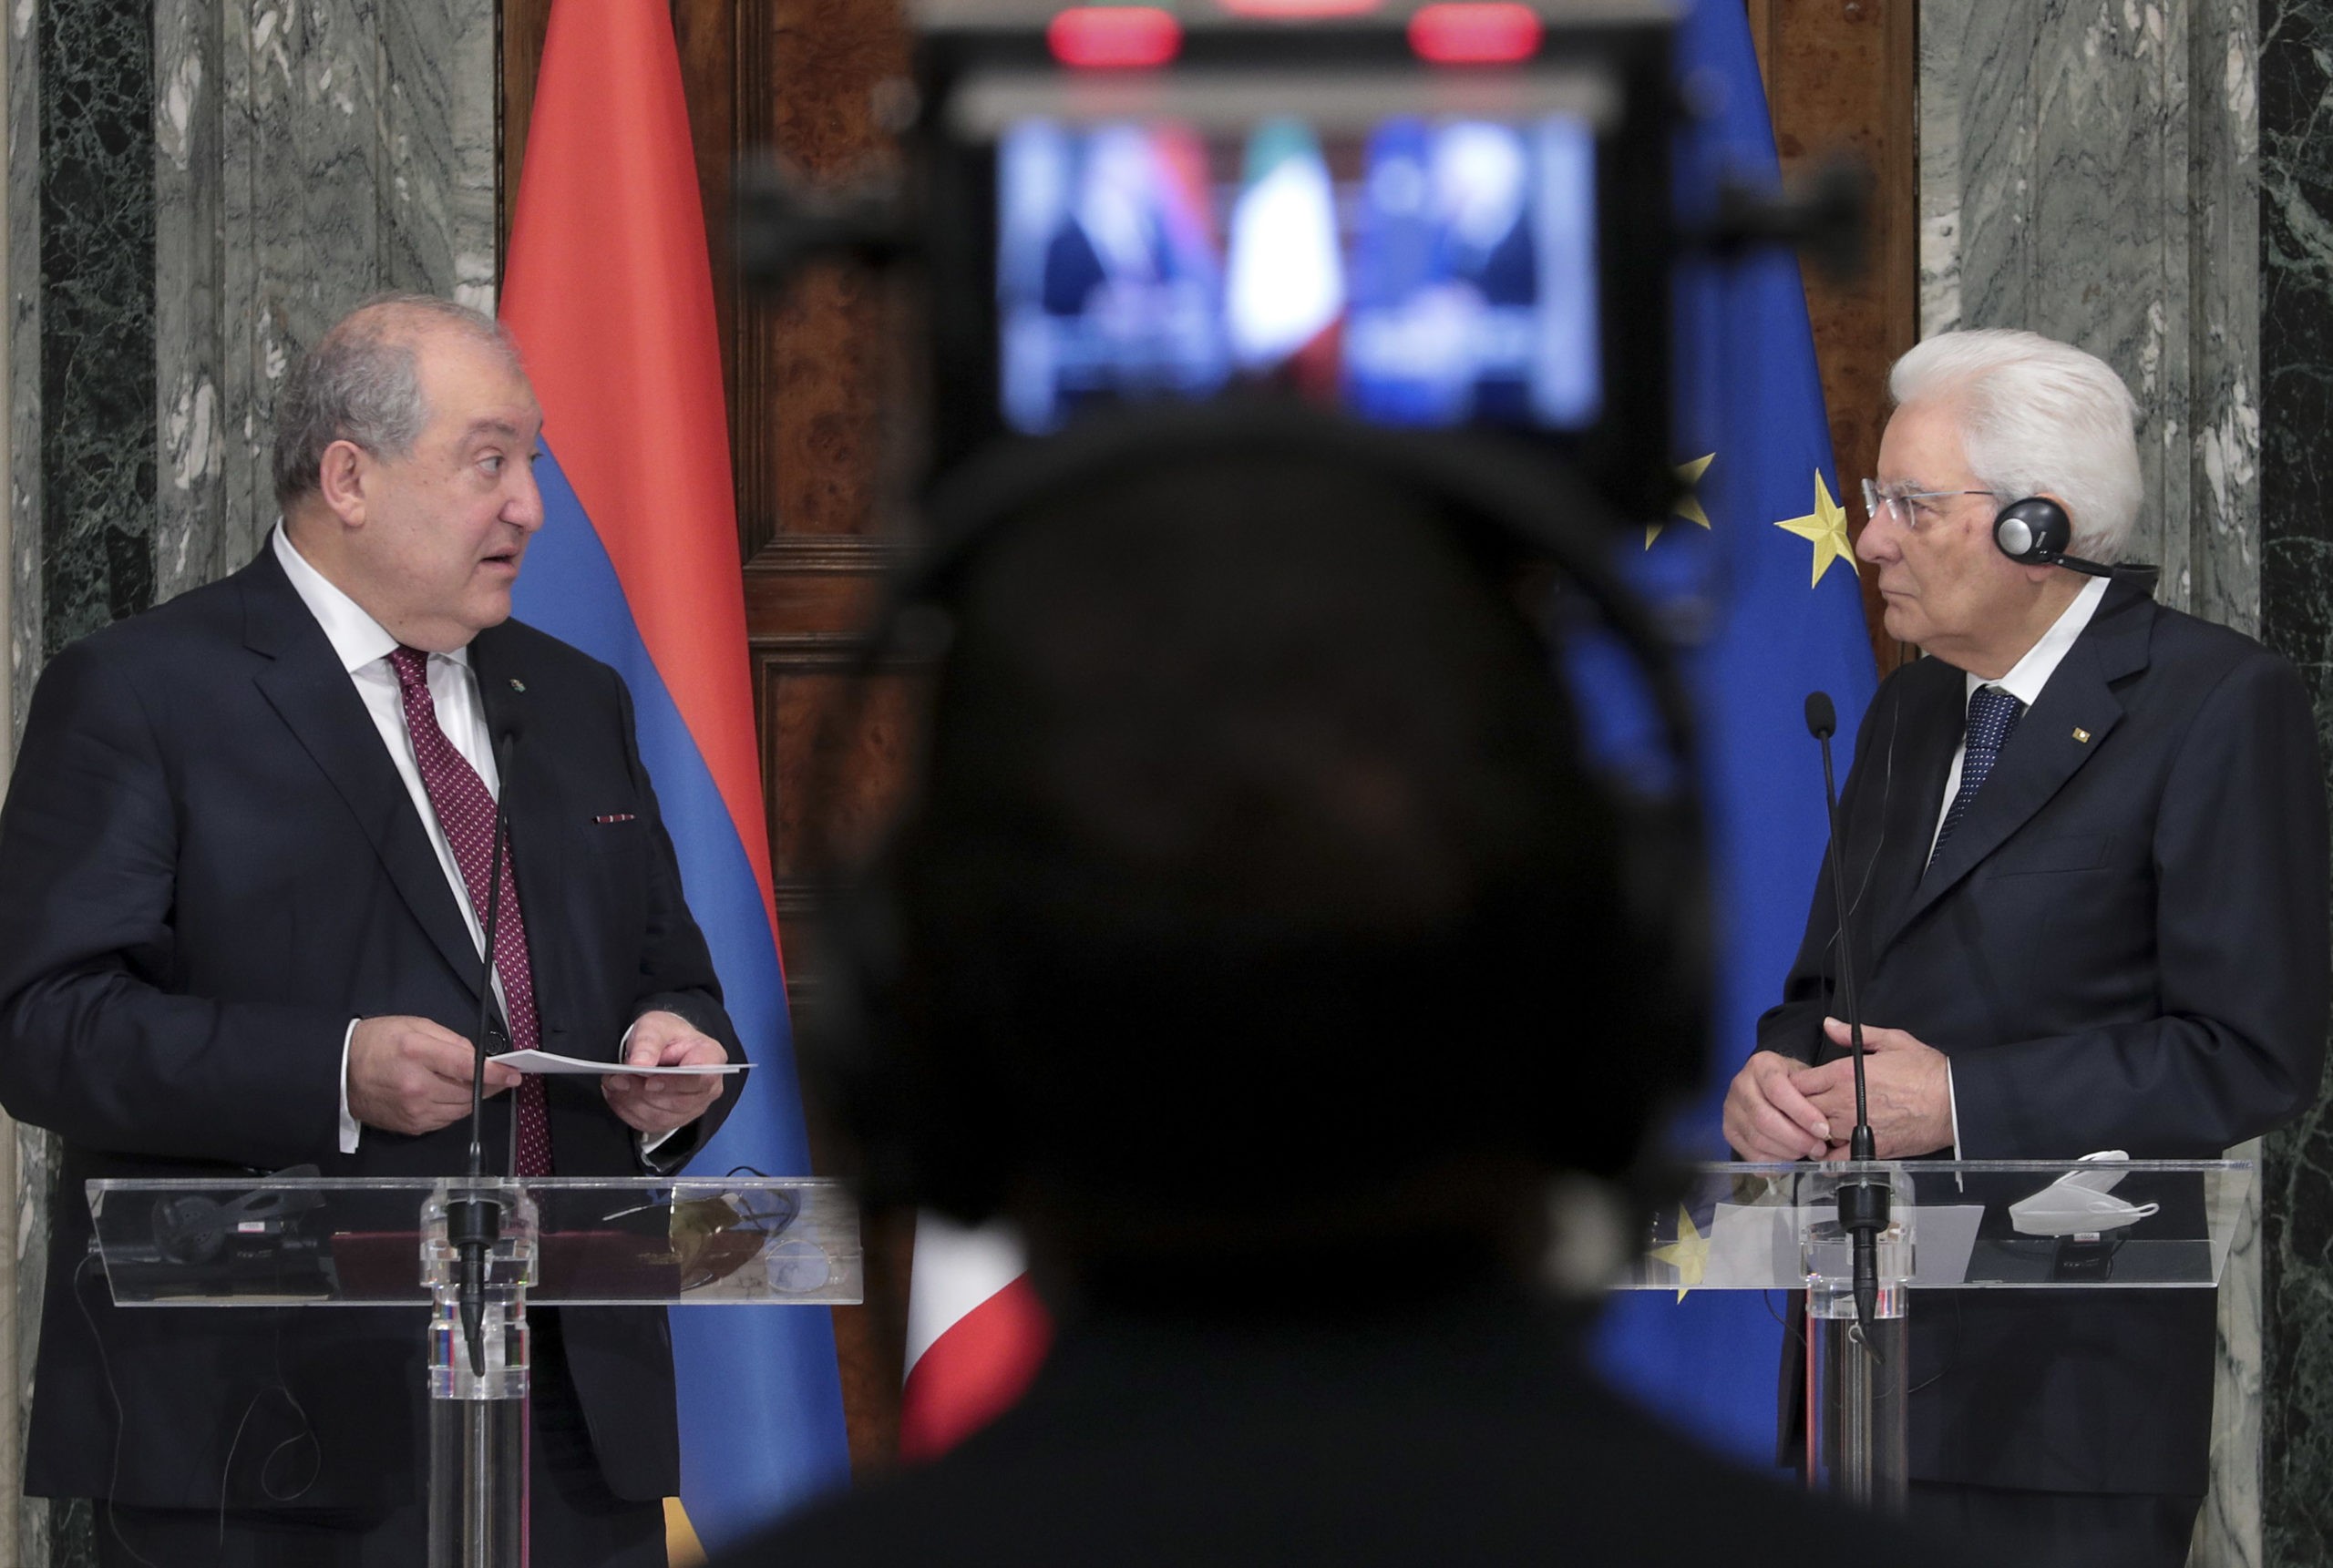 Prima visita di stato di un presidente armeno in Italia